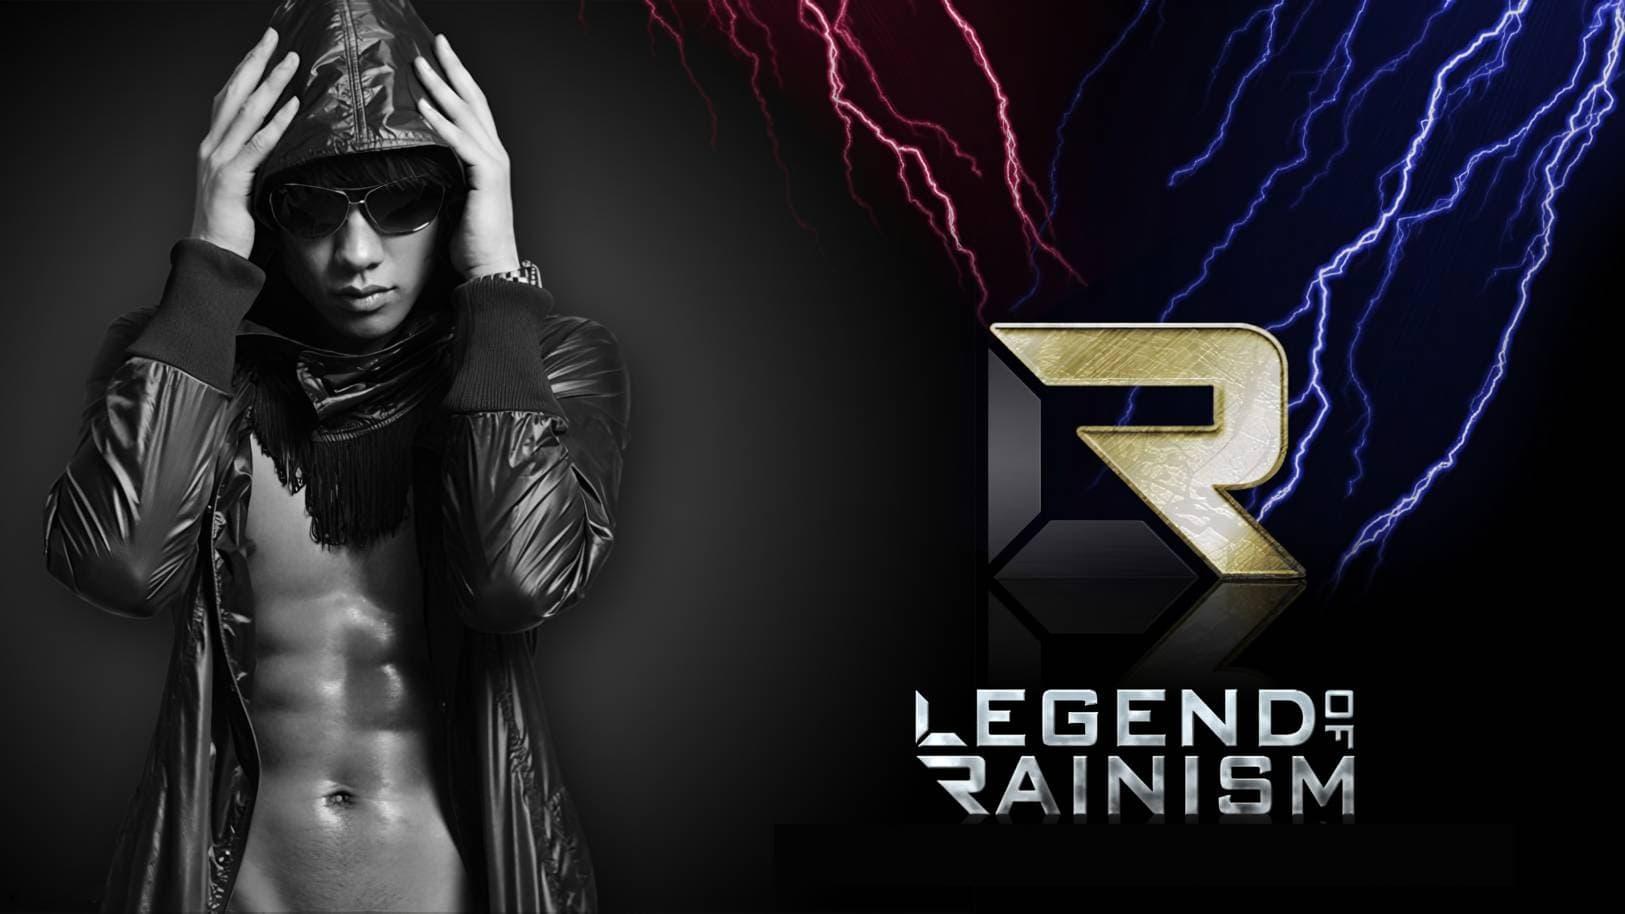 The Legend of Rainism Tour backdrop